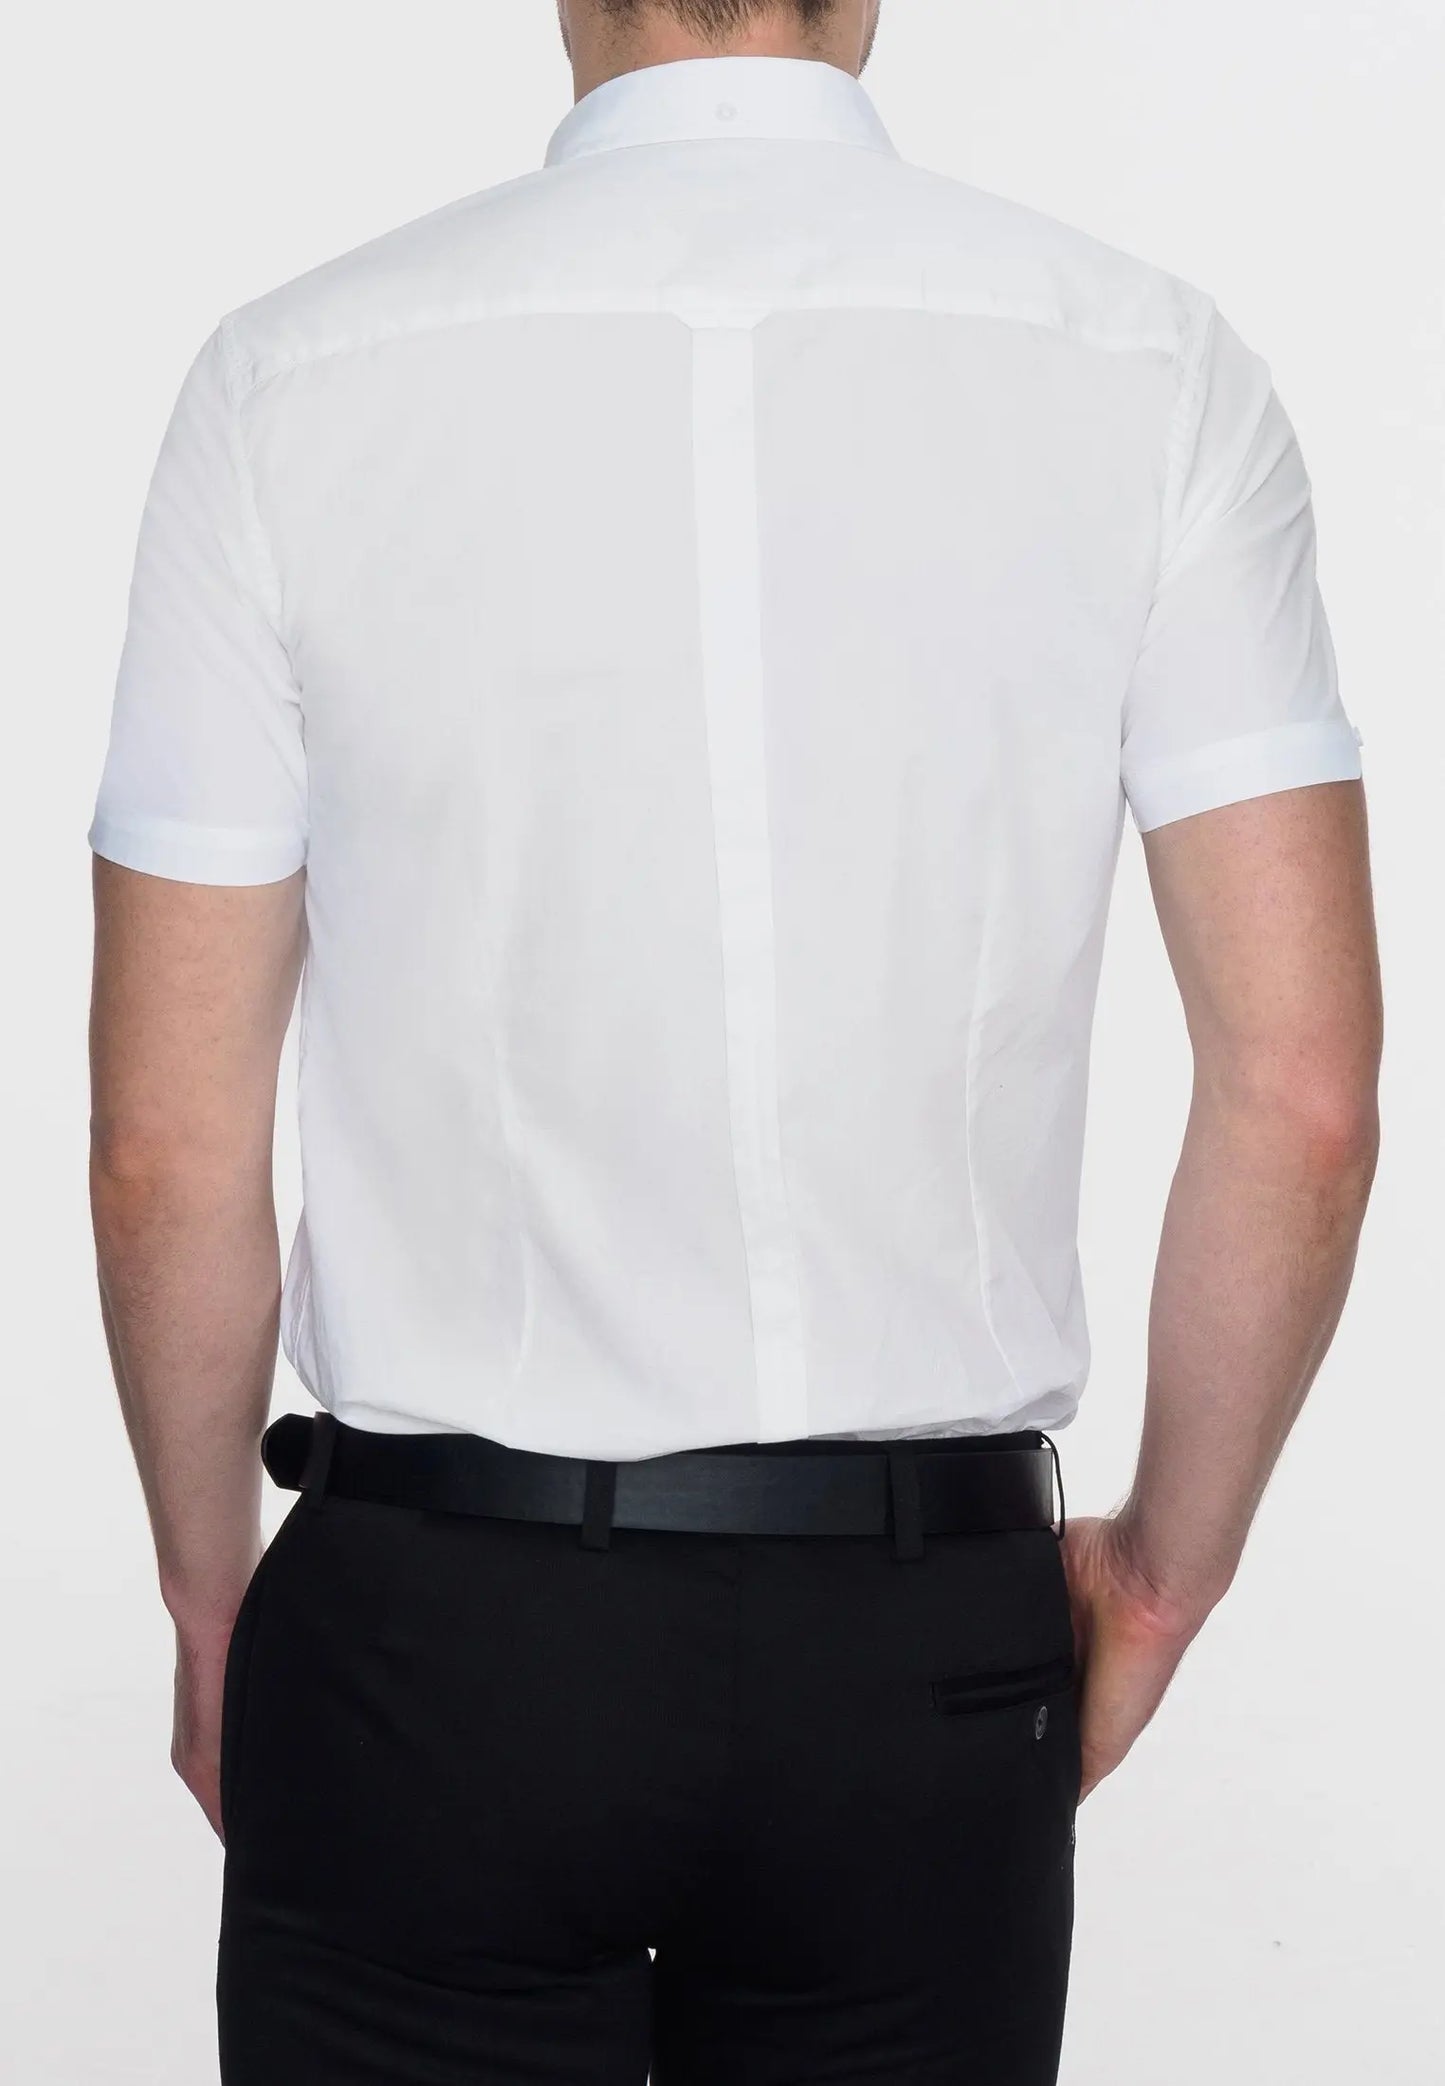 Merc London Baxter Short Sleeve Shirt - White From Woven Durham